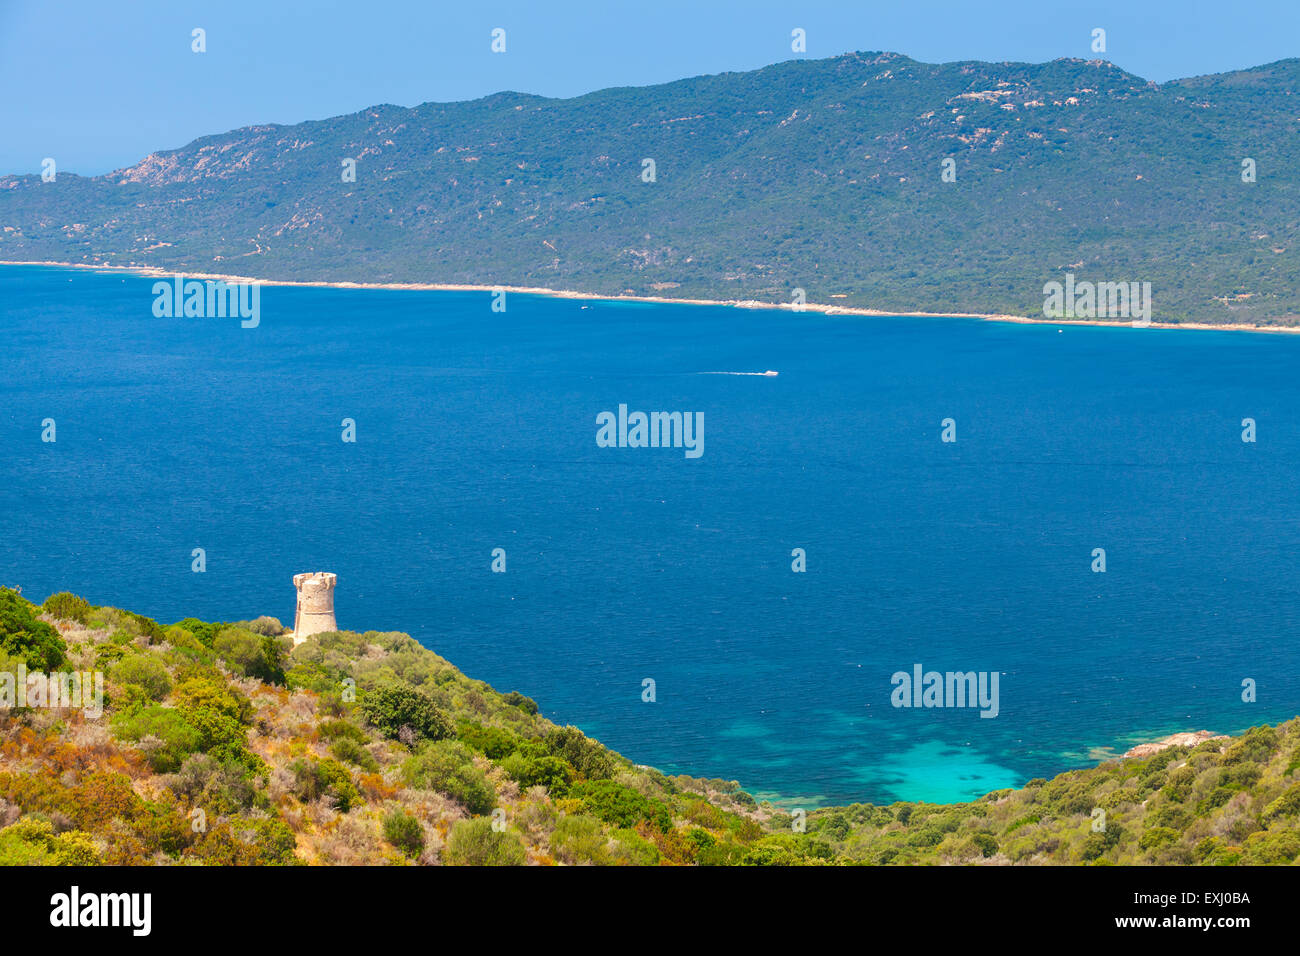 El paisaje de la bahía de Cupabia con antiguos genoveses Campanella torre de costa, Córcega, Francia Foto de stock